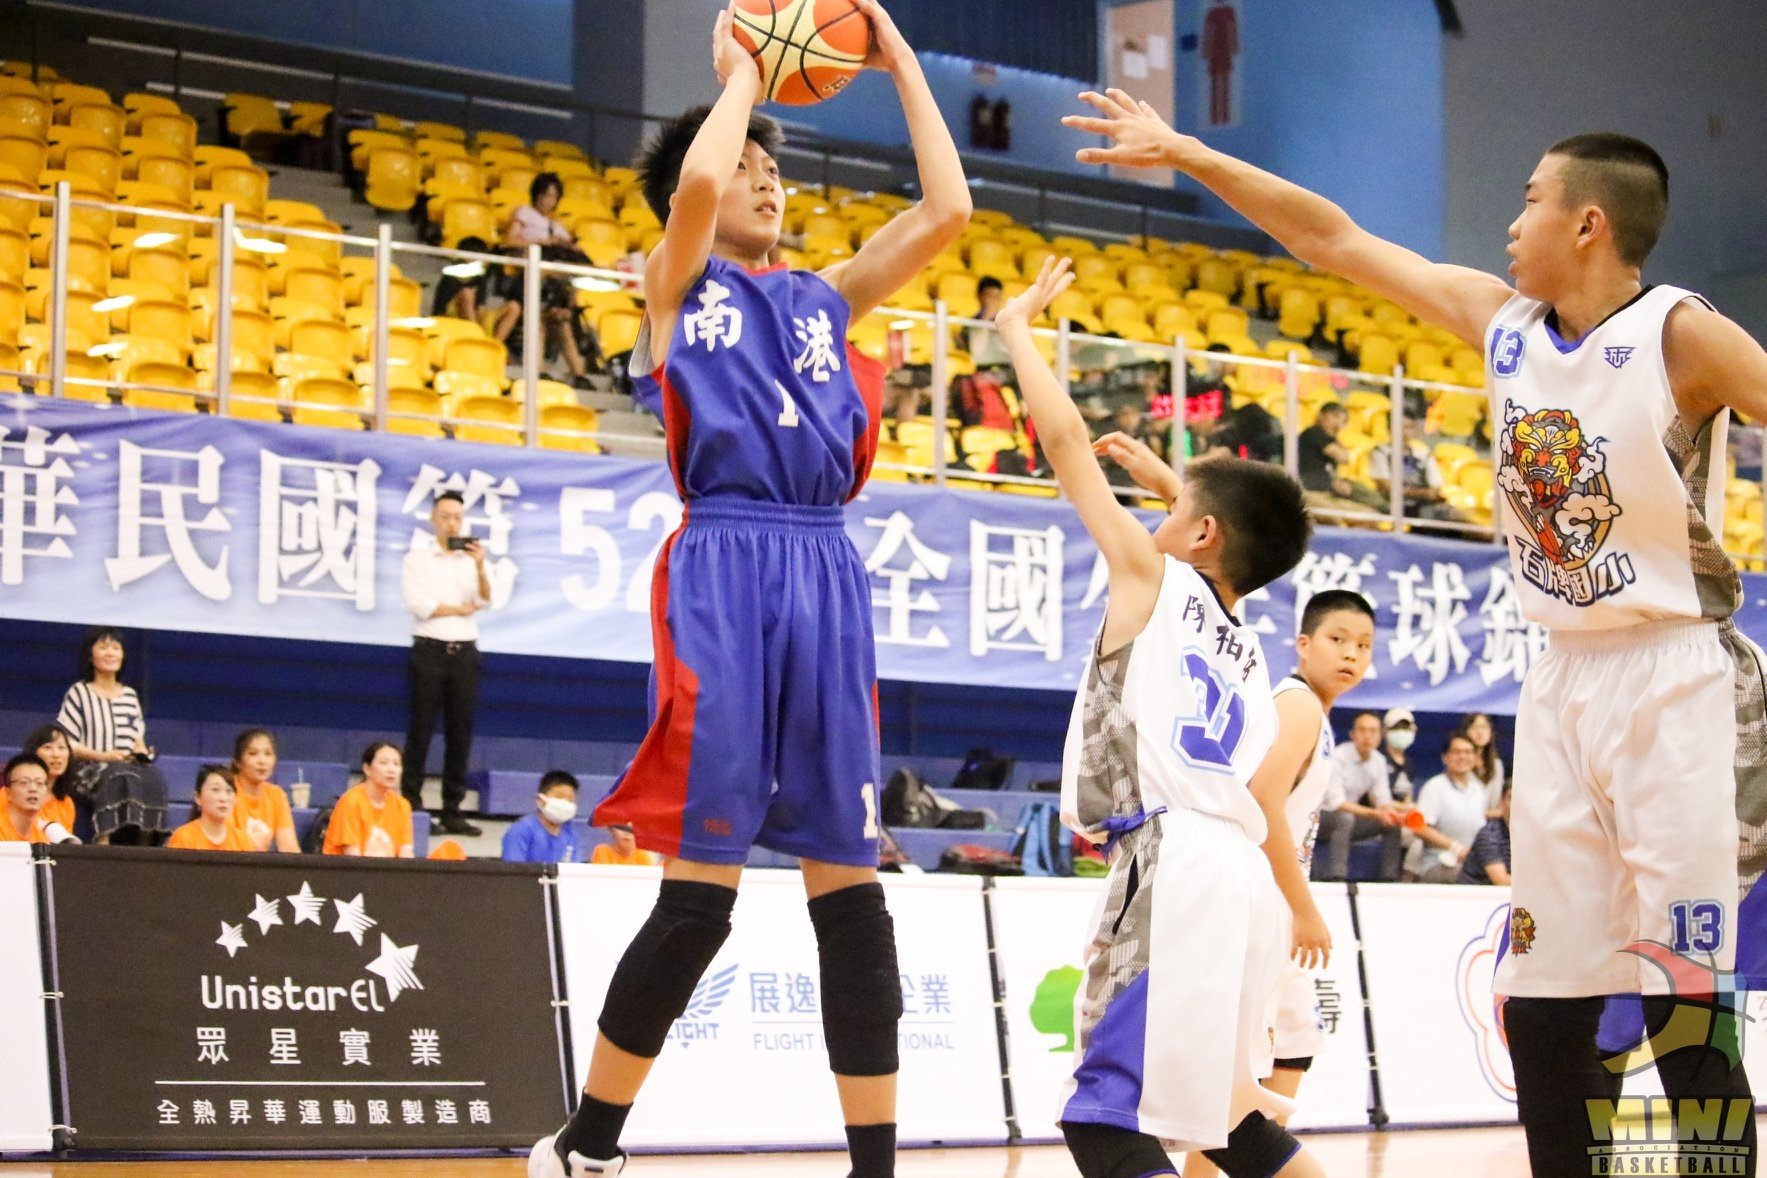 中華民國少年籃球發展協會